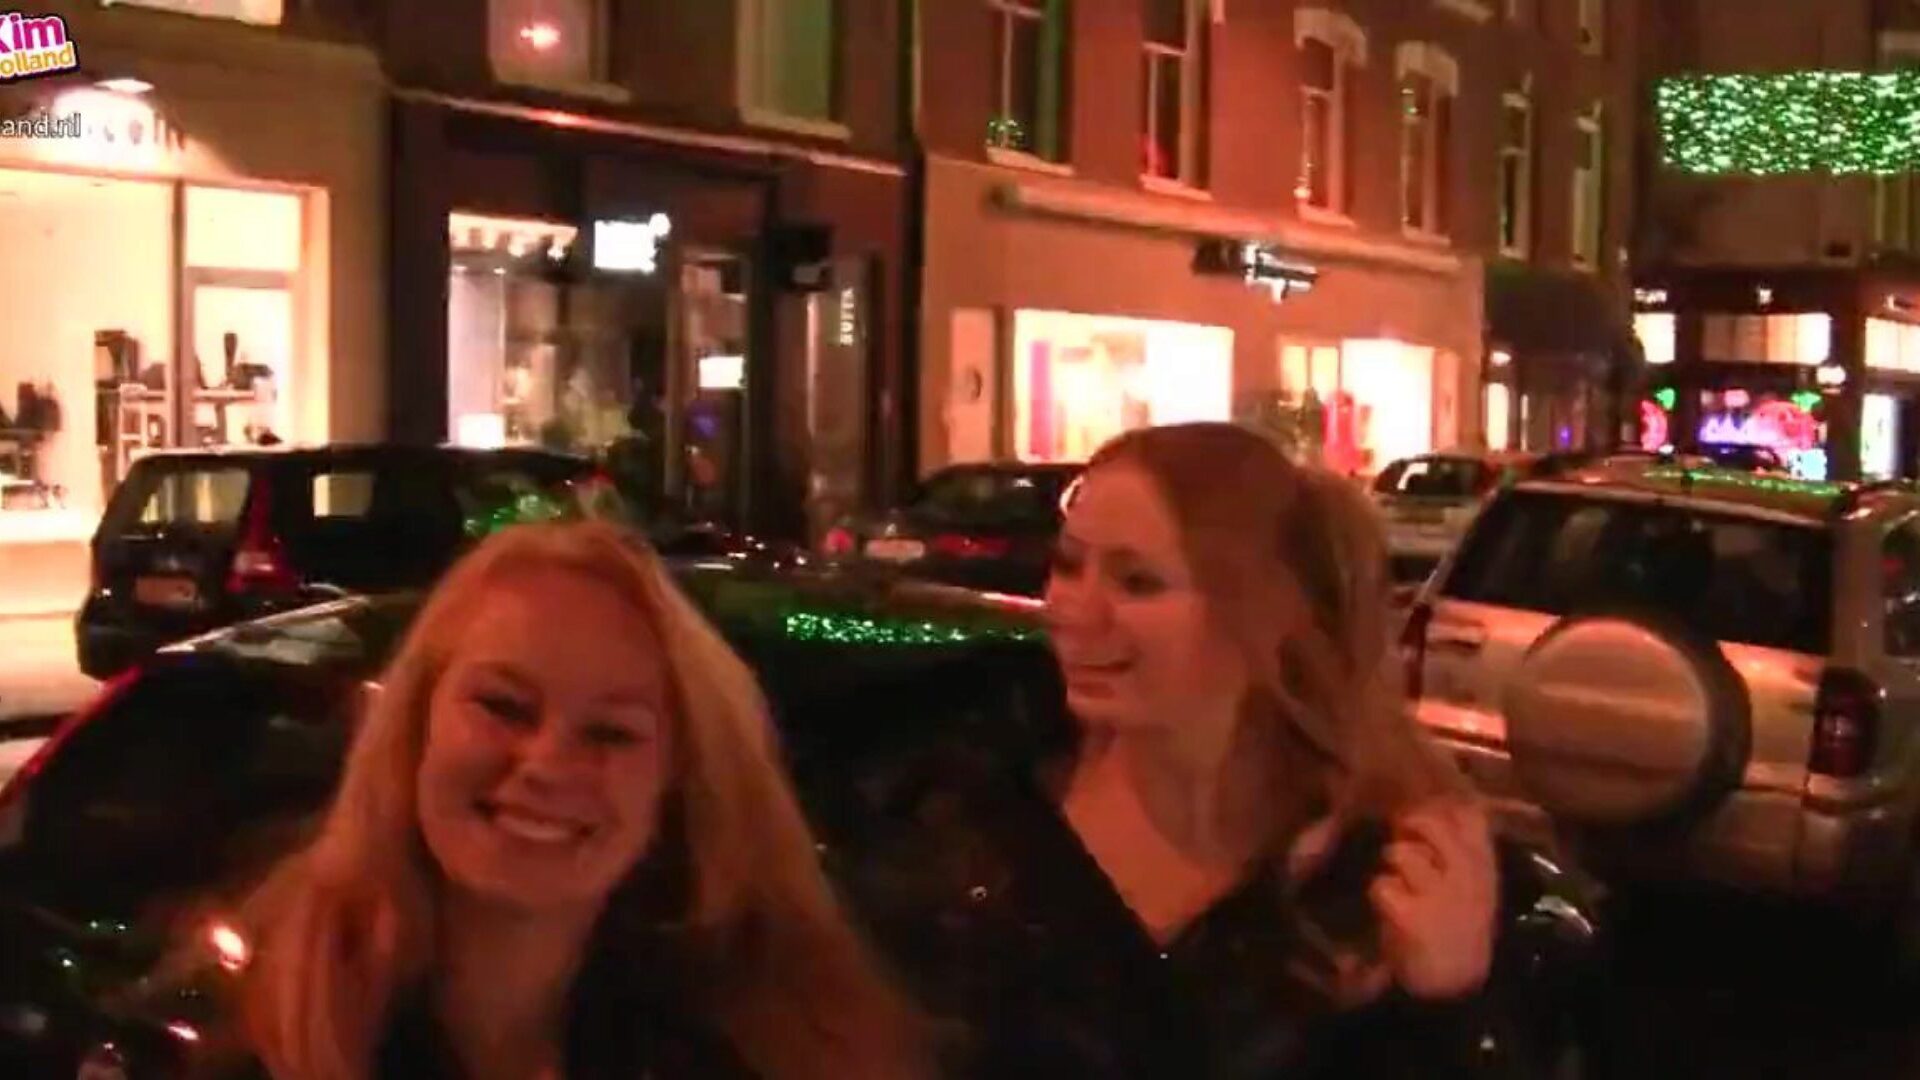 فتاتان جامحتان في أمستردام ، الاباحية الحرة عالية الدقة 54 شاهد فتاتين جامحتين في فيلم أمستردام على xhamster ، موقع أنبوب الانفجار عالي الدقة الأكثر تميزًا مع الكثير من مقاطع الفيديو الإباحية الهولندية المجانية